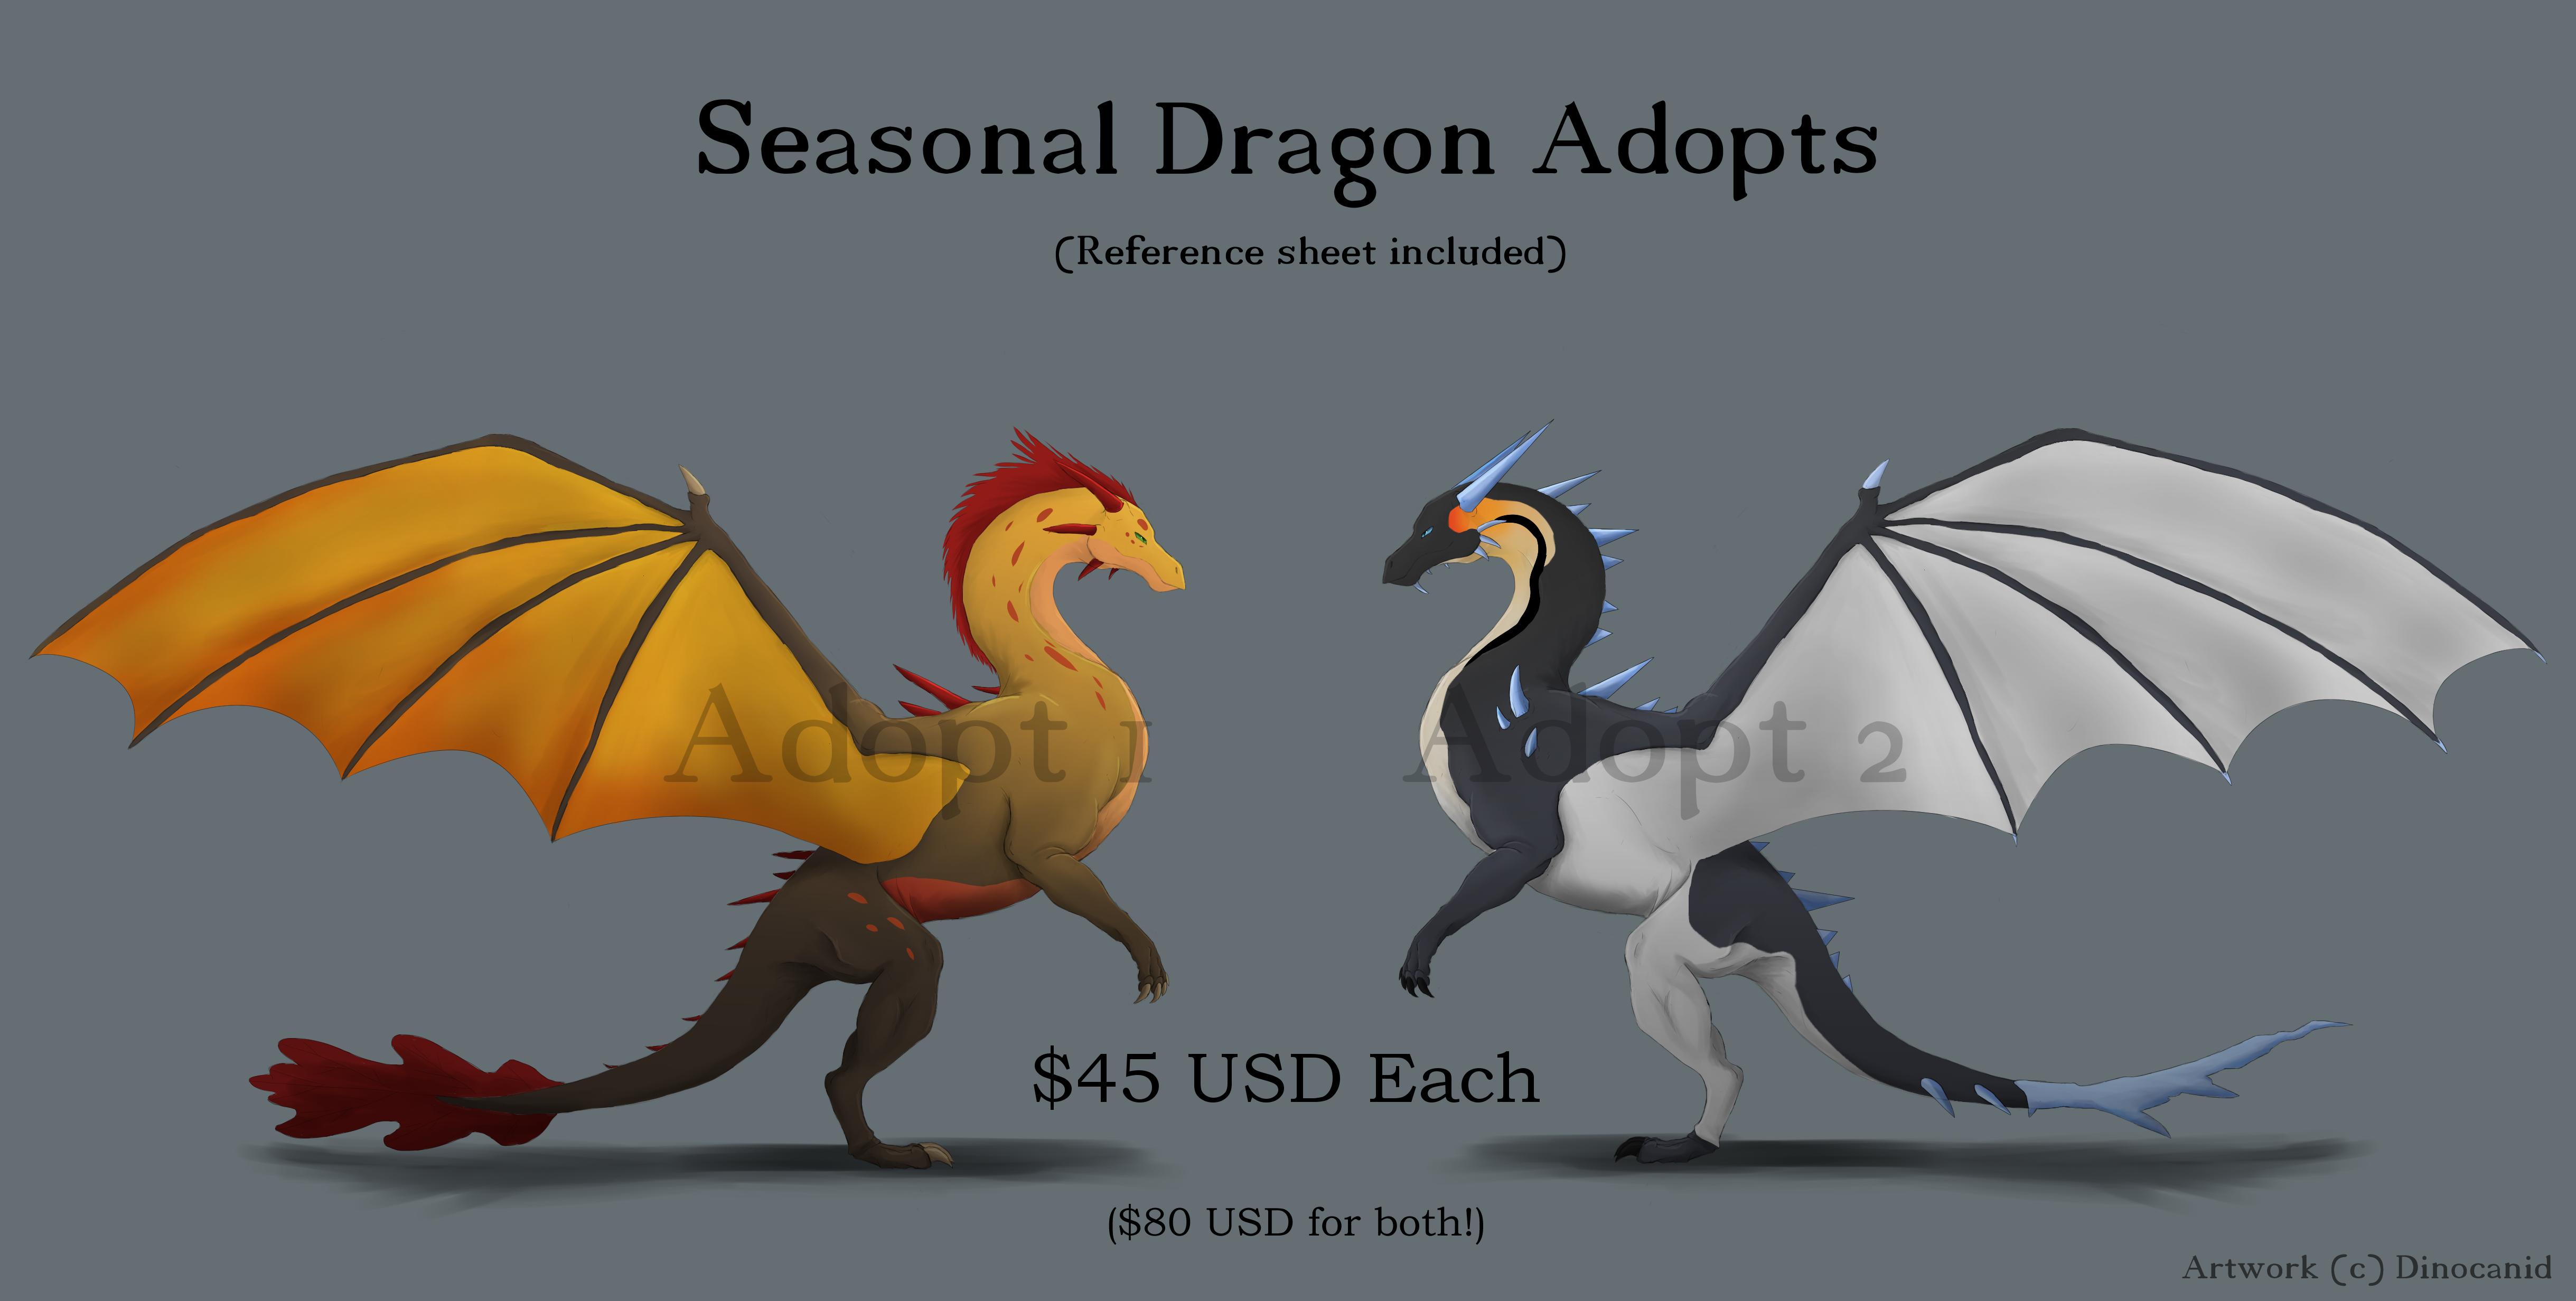 1603874298.dinocanid_seasonal_dragon_adopts.png